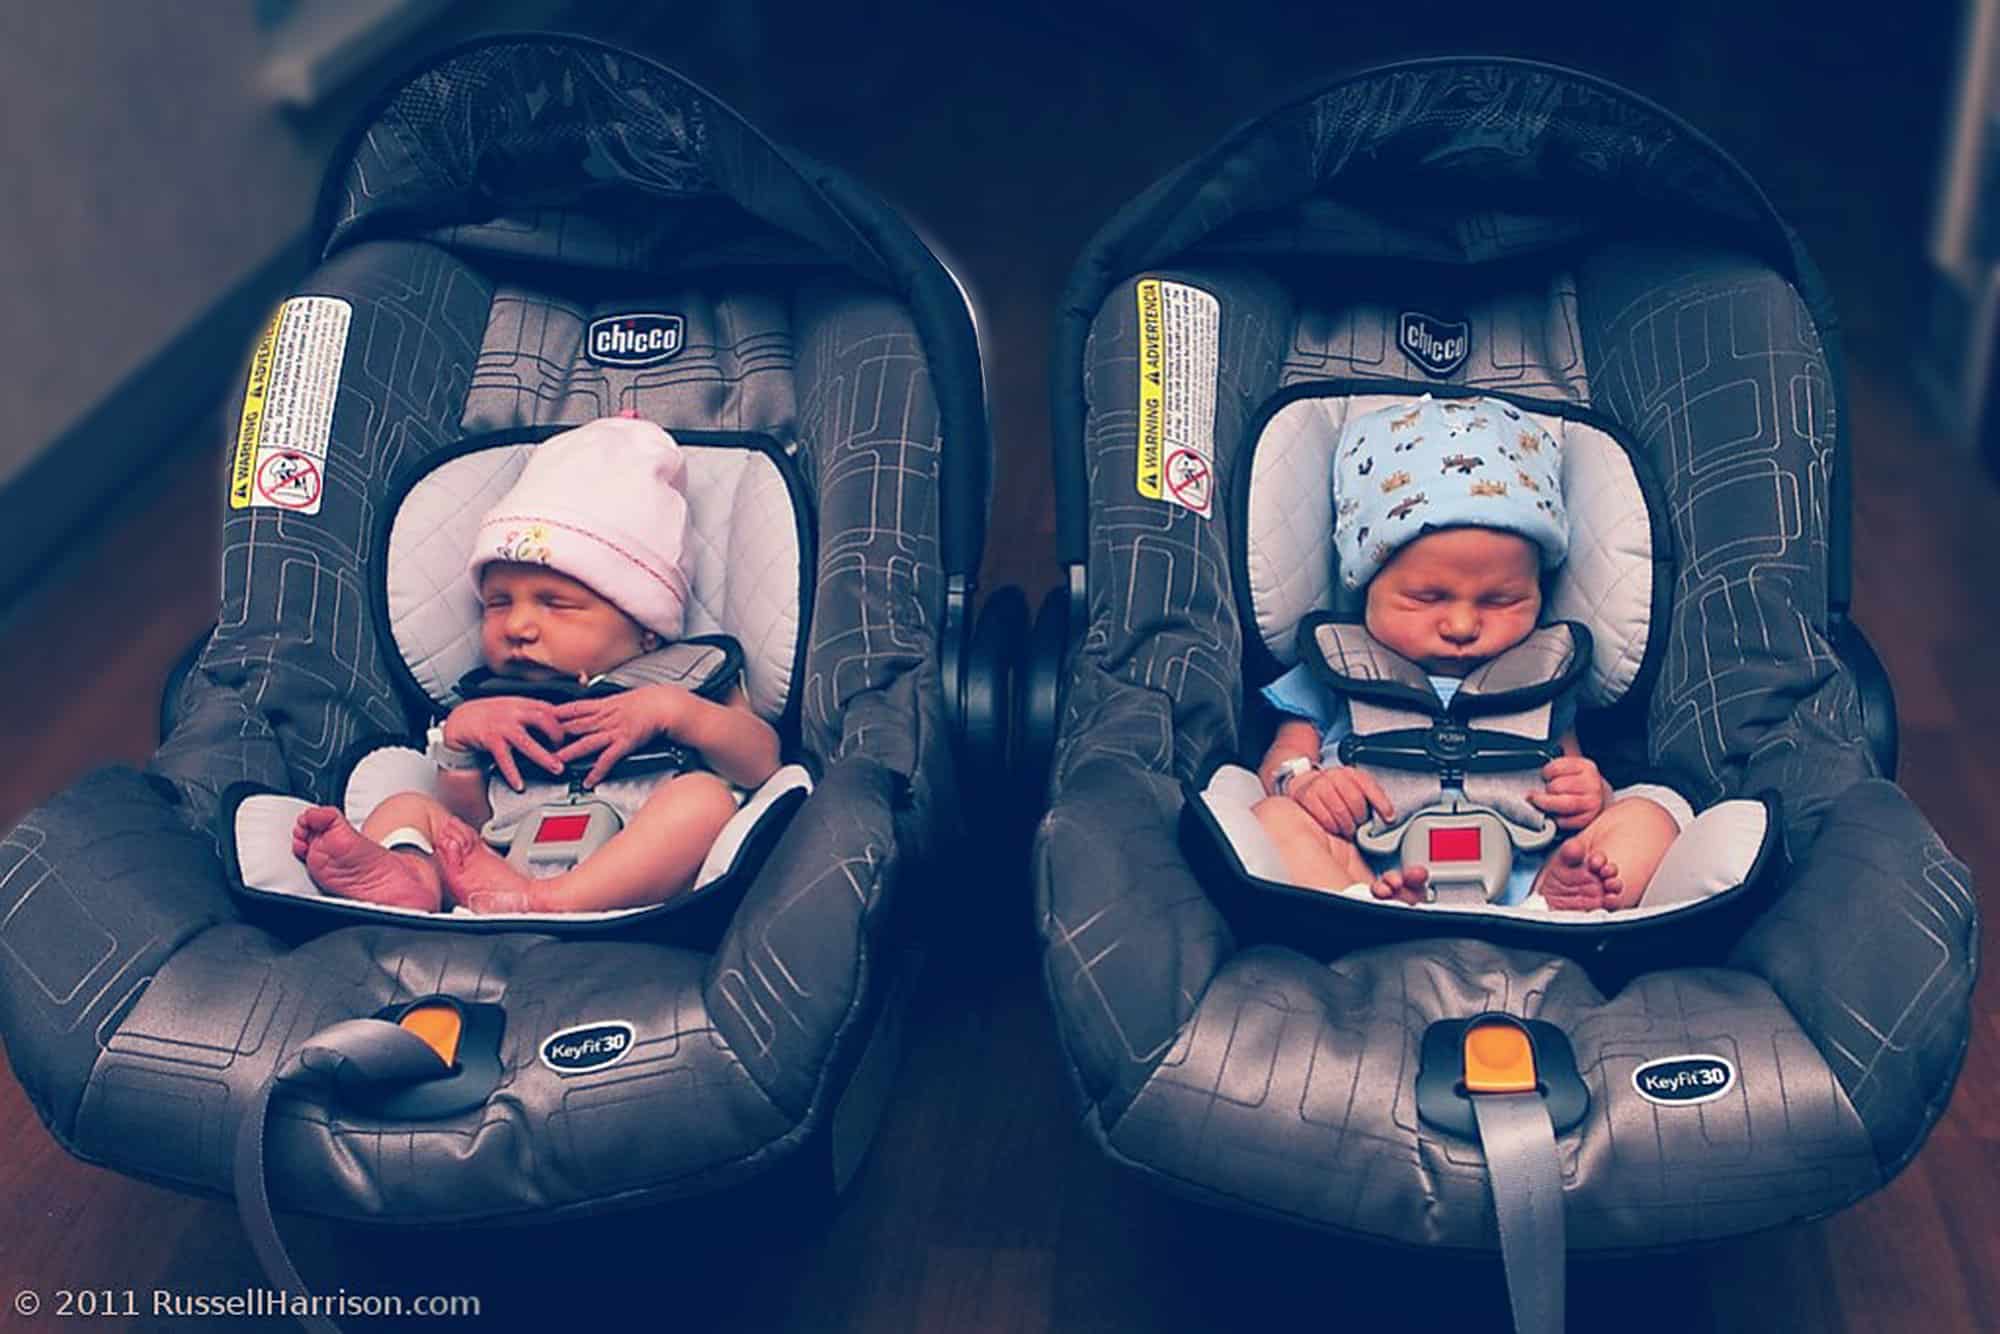 Sillas de coche para bebés prematuros: Cómo elegirla - CSC